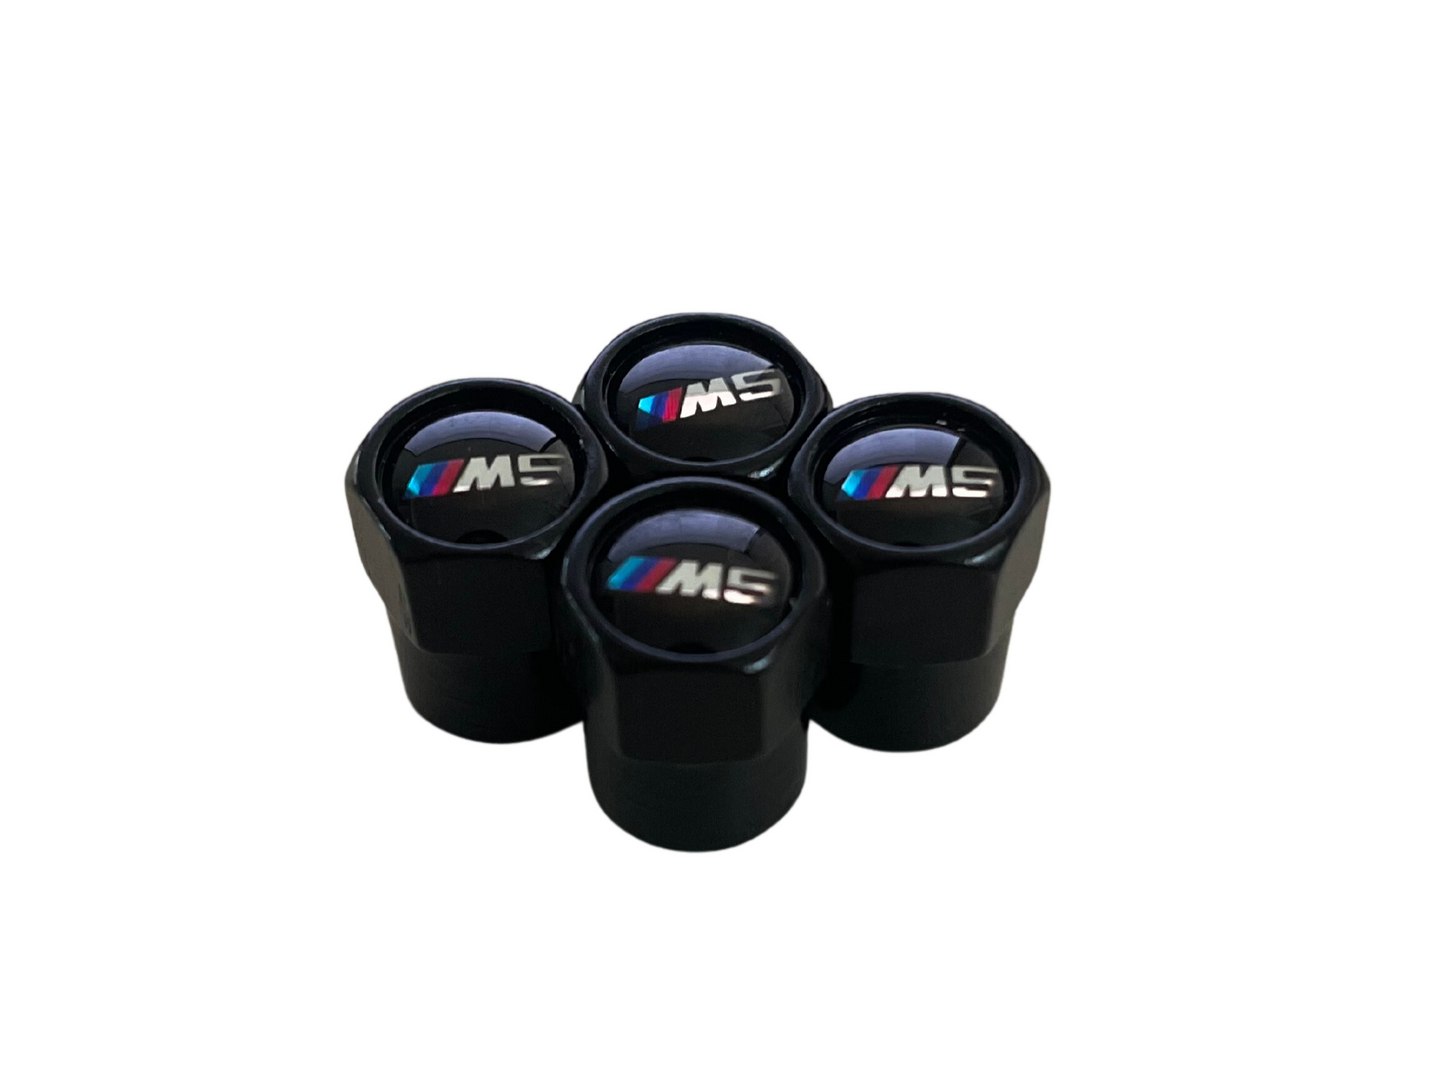 BMW M5 Valve Caps - Black